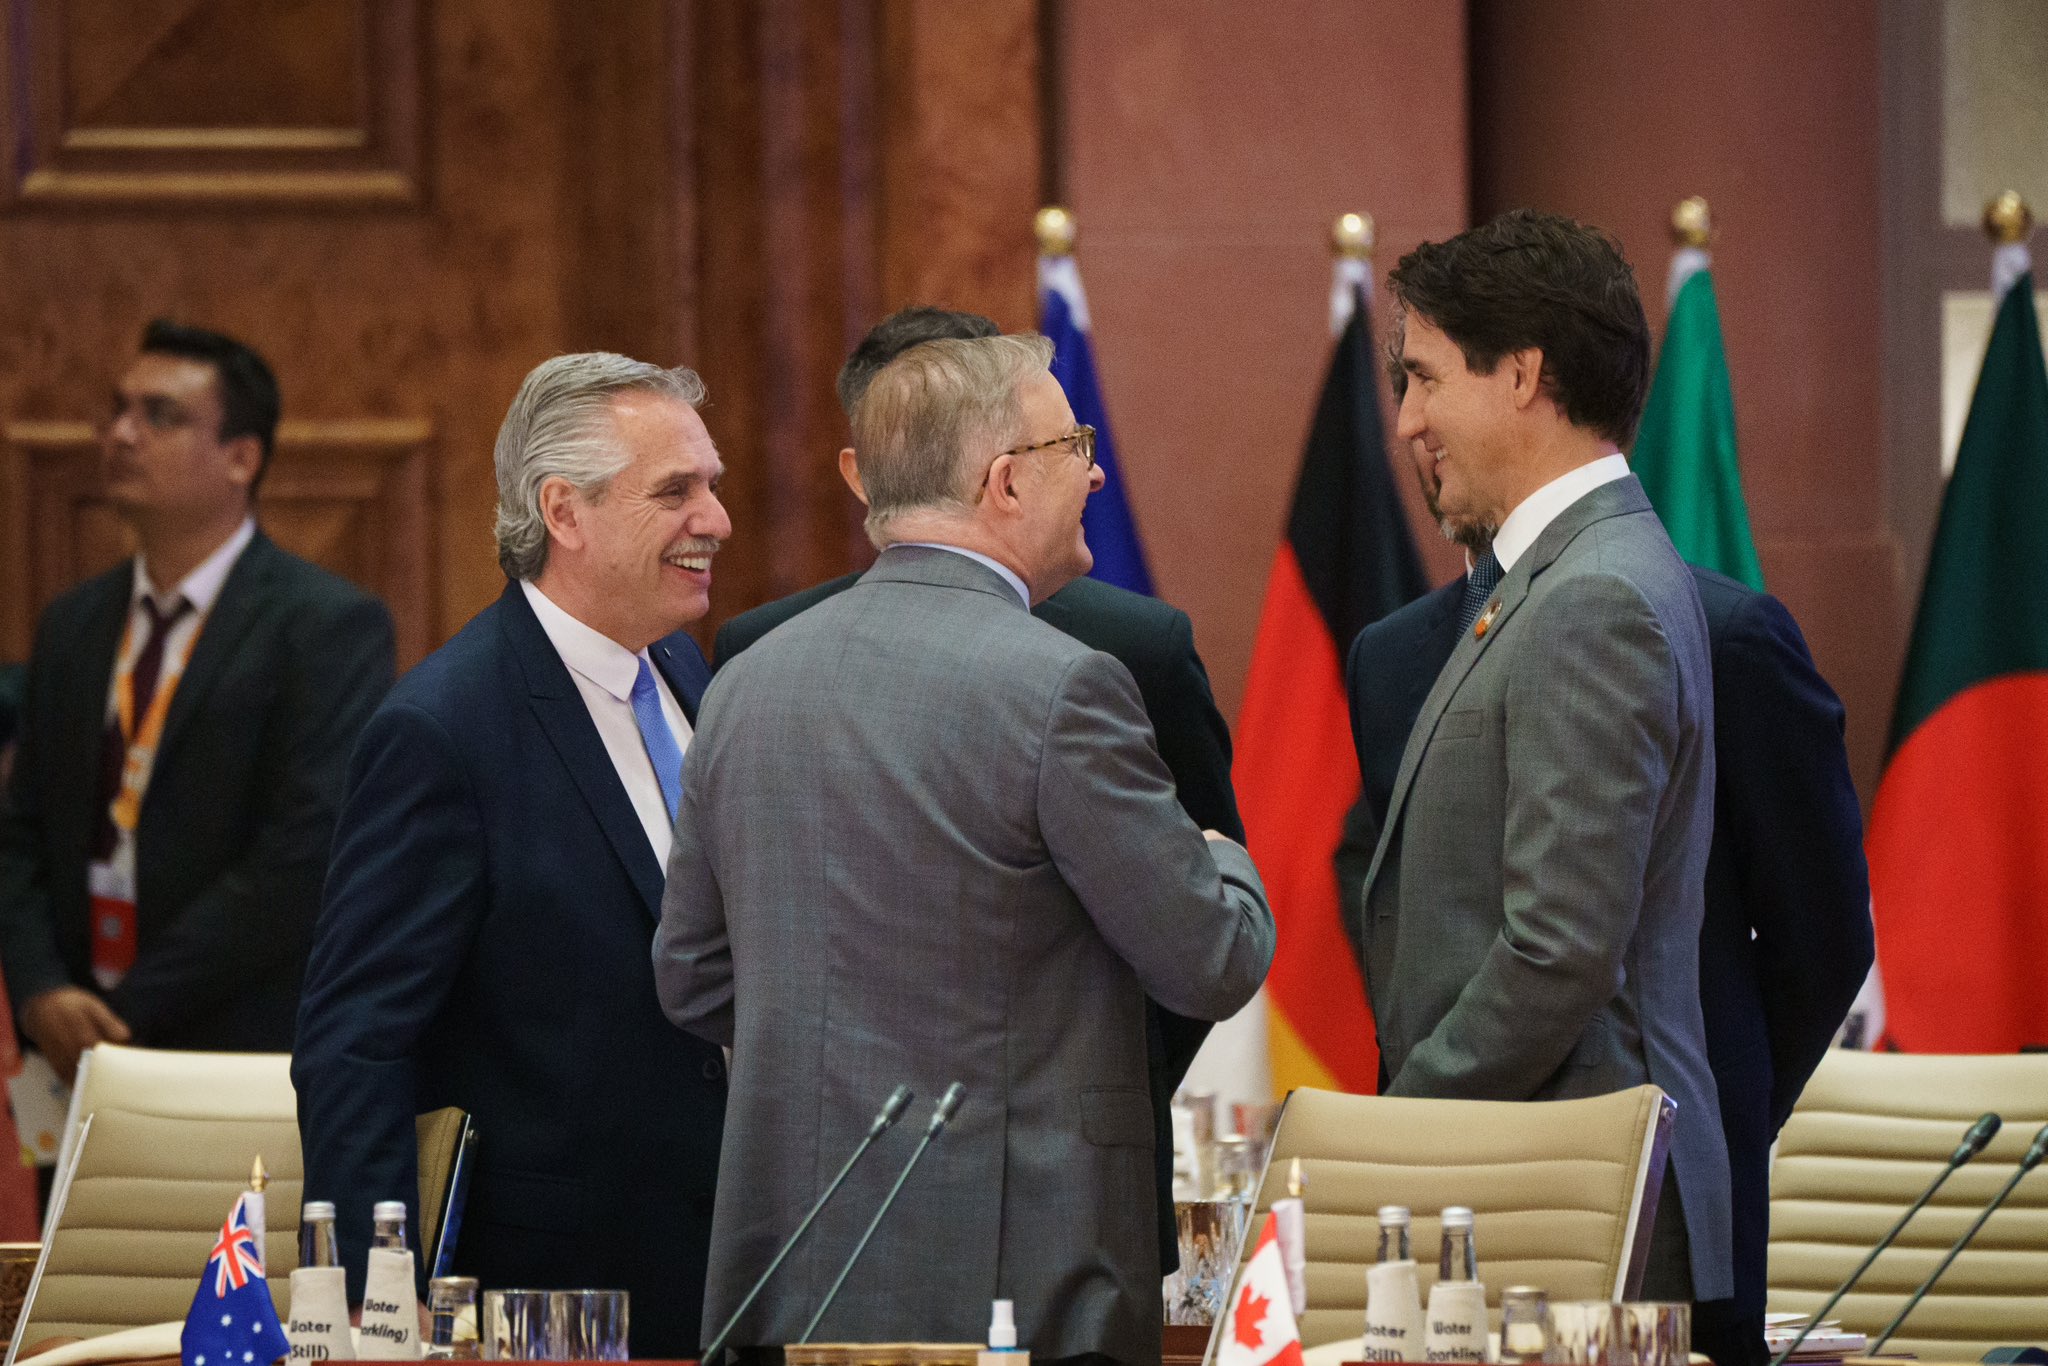 Le premier ministre Justin Trudeau est debout à côté d’une table de conférence et discute avec un groupe de dirigeants. Ils sourient. Une rangée de drapeaux se trouve derrière eux.